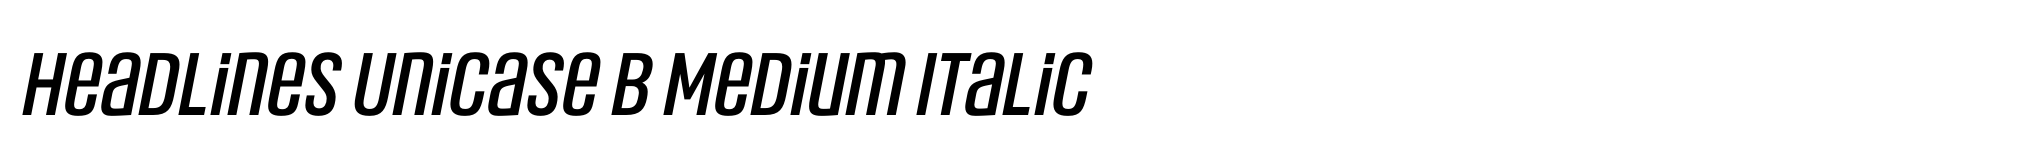 Headlines Unicase B Medium Italic image